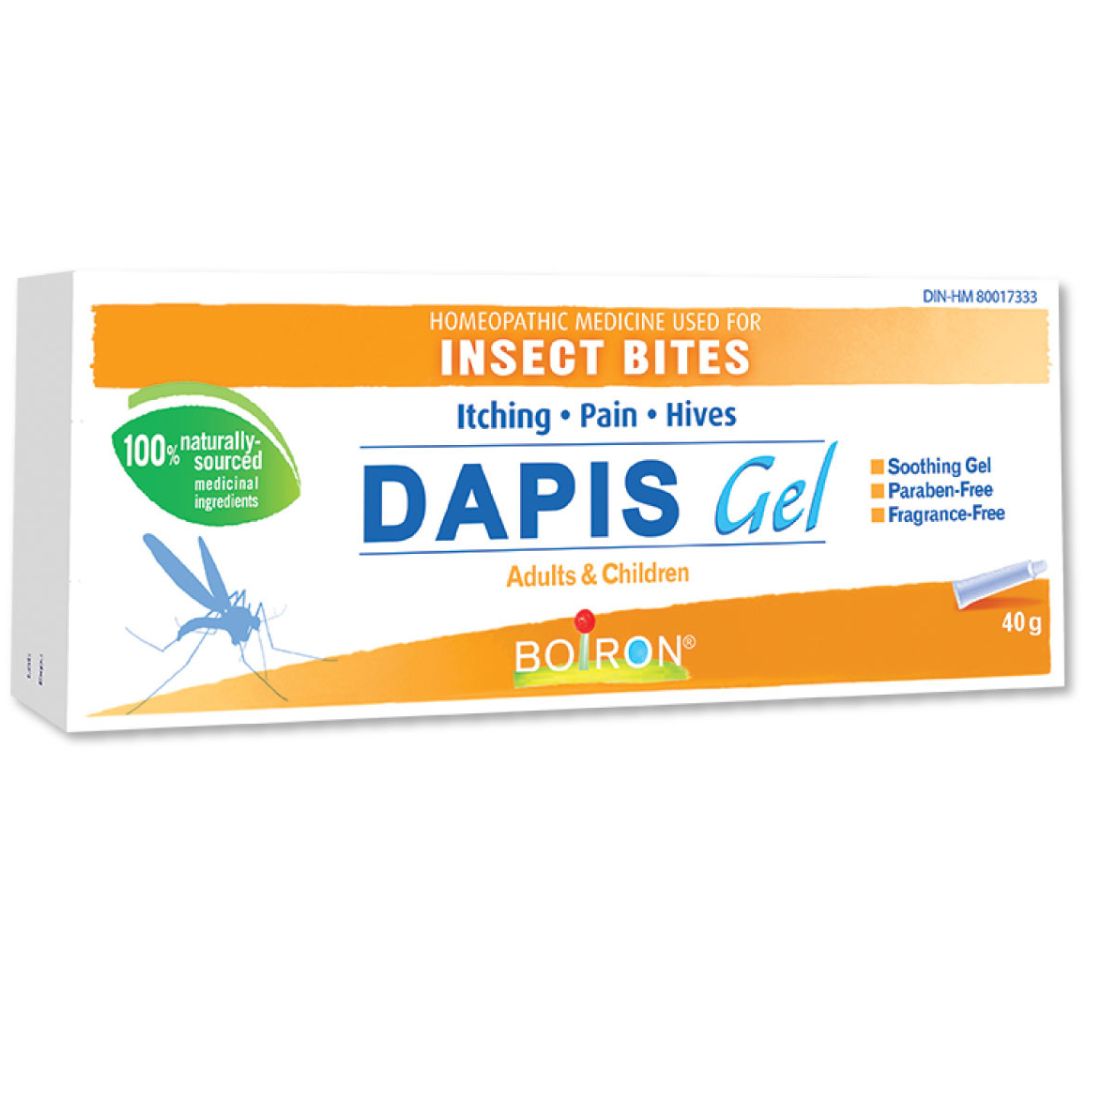 Boiron Dapis Gel, Soothes Bug Bites Naturally, Paraben Free, 40g